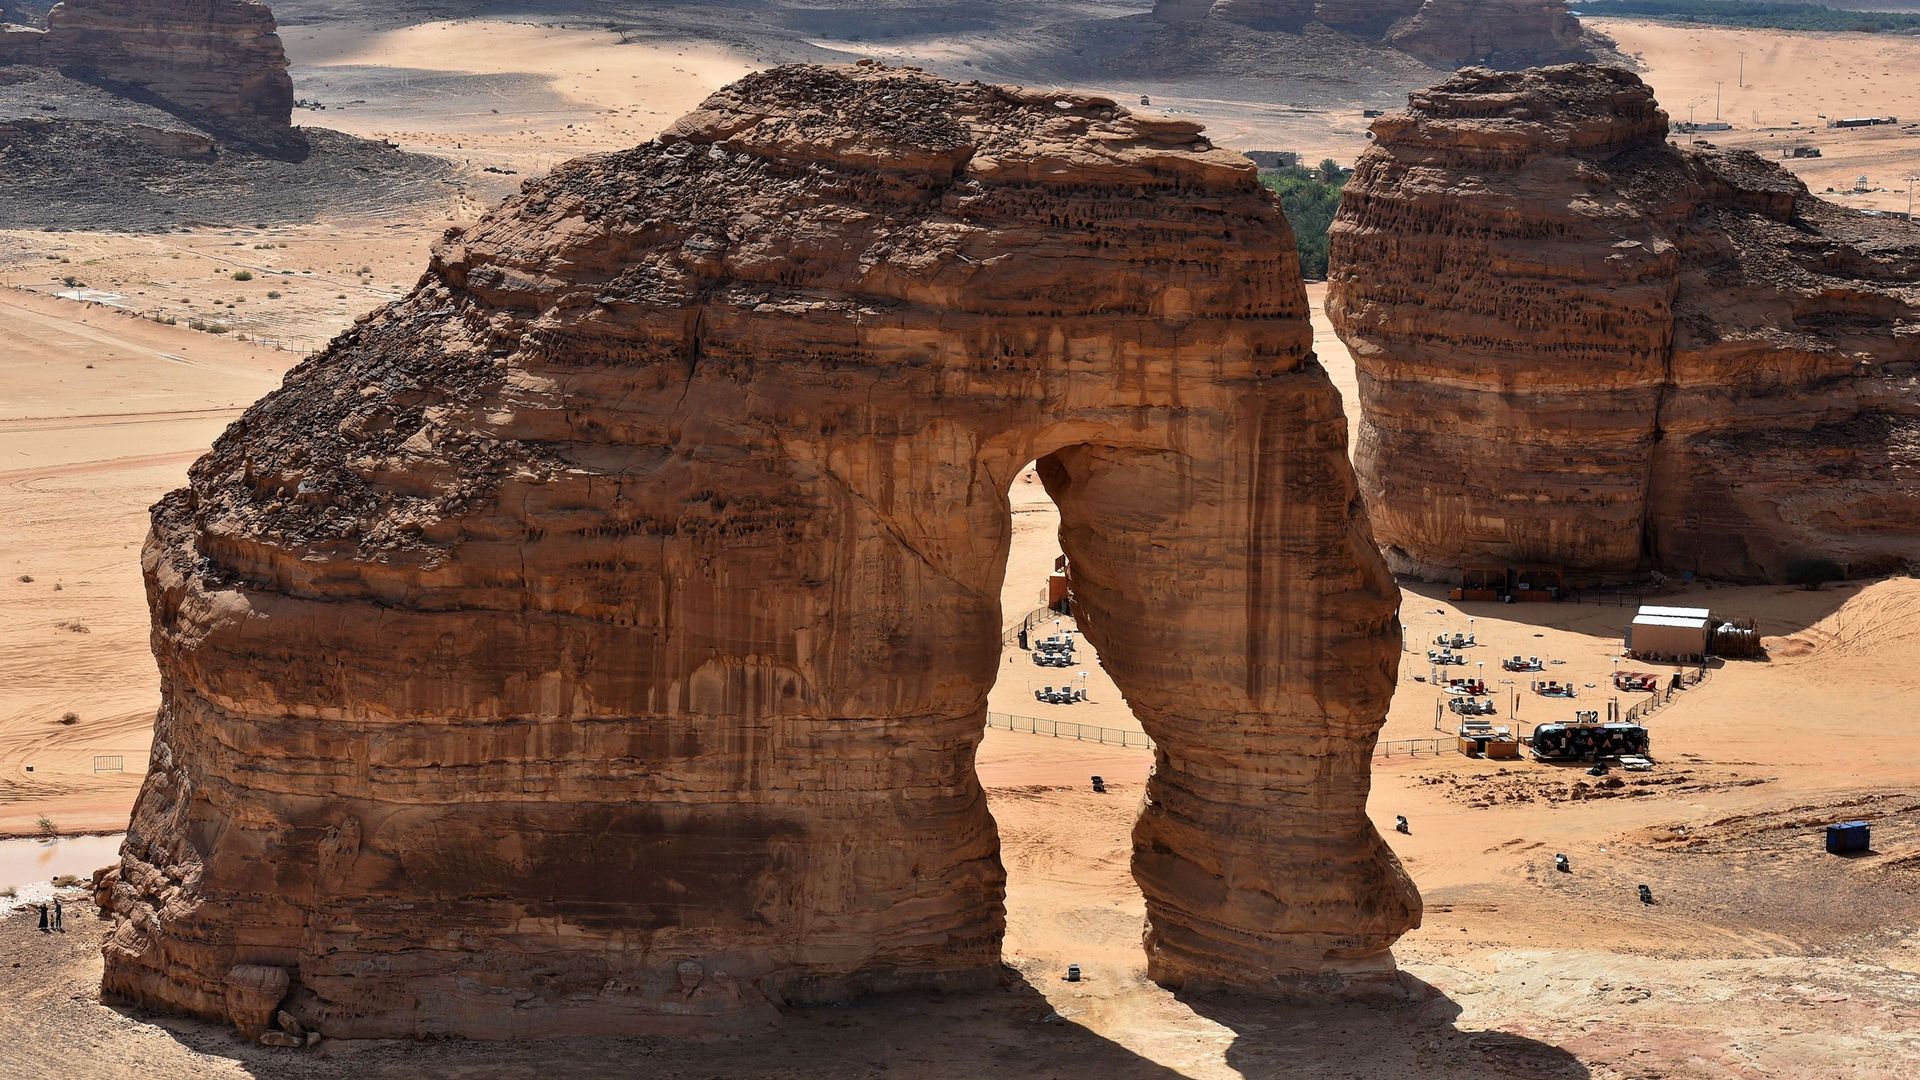 Ouverture de l'Arabie saoudite aux touristes: les principaux sites